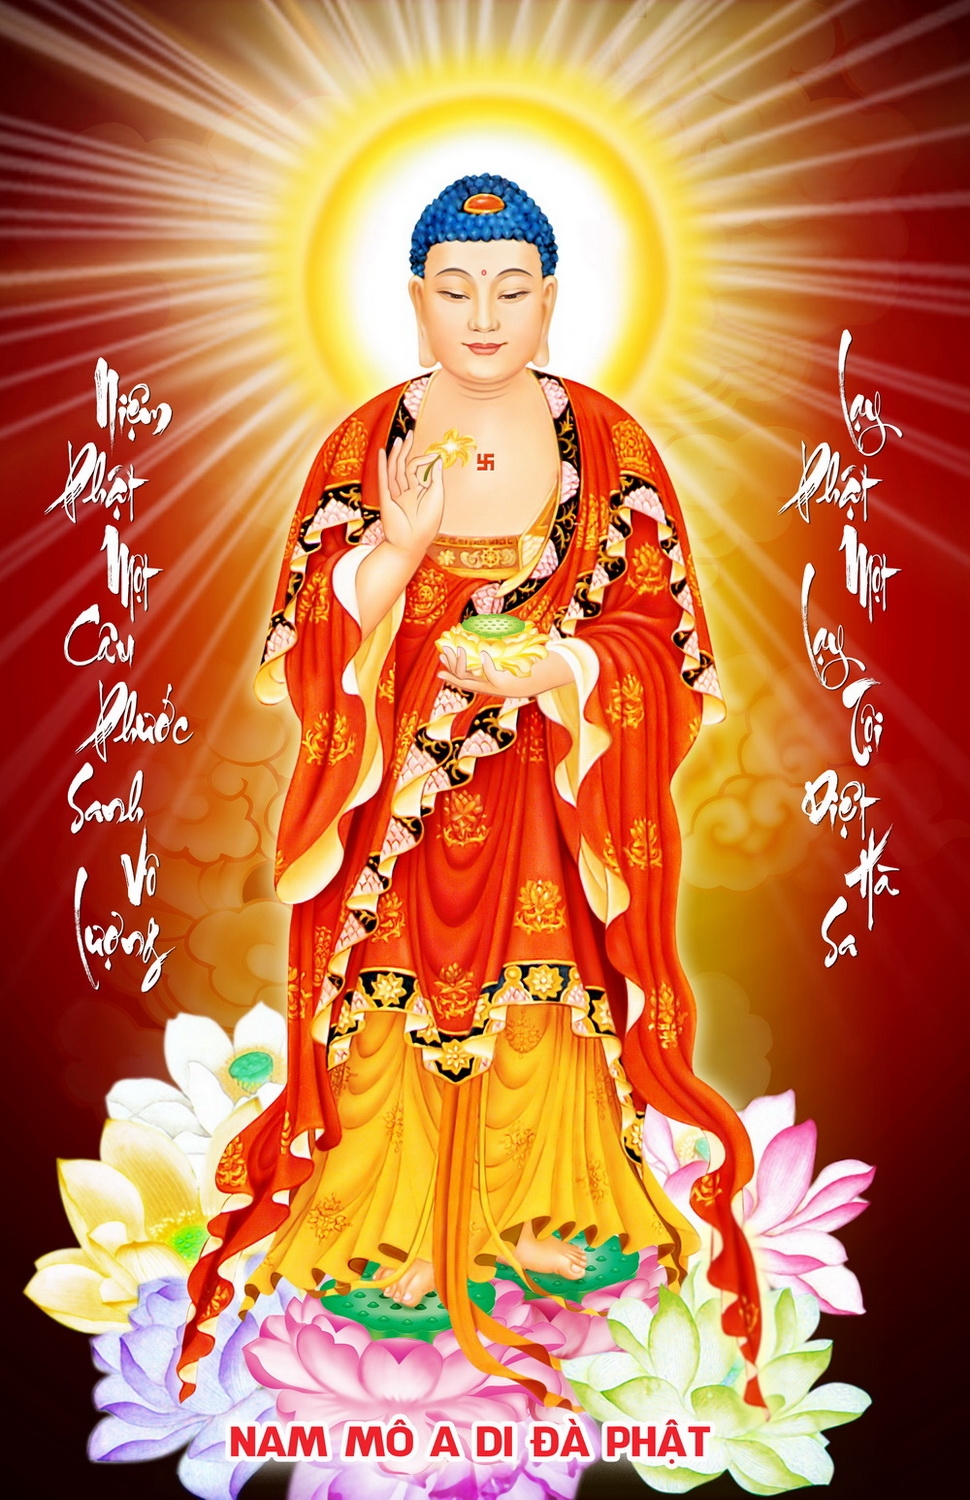 Nếu bạn yêu thích Phật giáo thì hình ảnh Phật A Di Đà chắc chắn sẽ là một điểm dừng chân tuyệt vời cho bạn. Hãy chiêm ngưỡng tác phẩm nghệ thuật này để cảm nhận tình yêu, niềm tin và sự tha thứ mà Phật giáo mang lại.